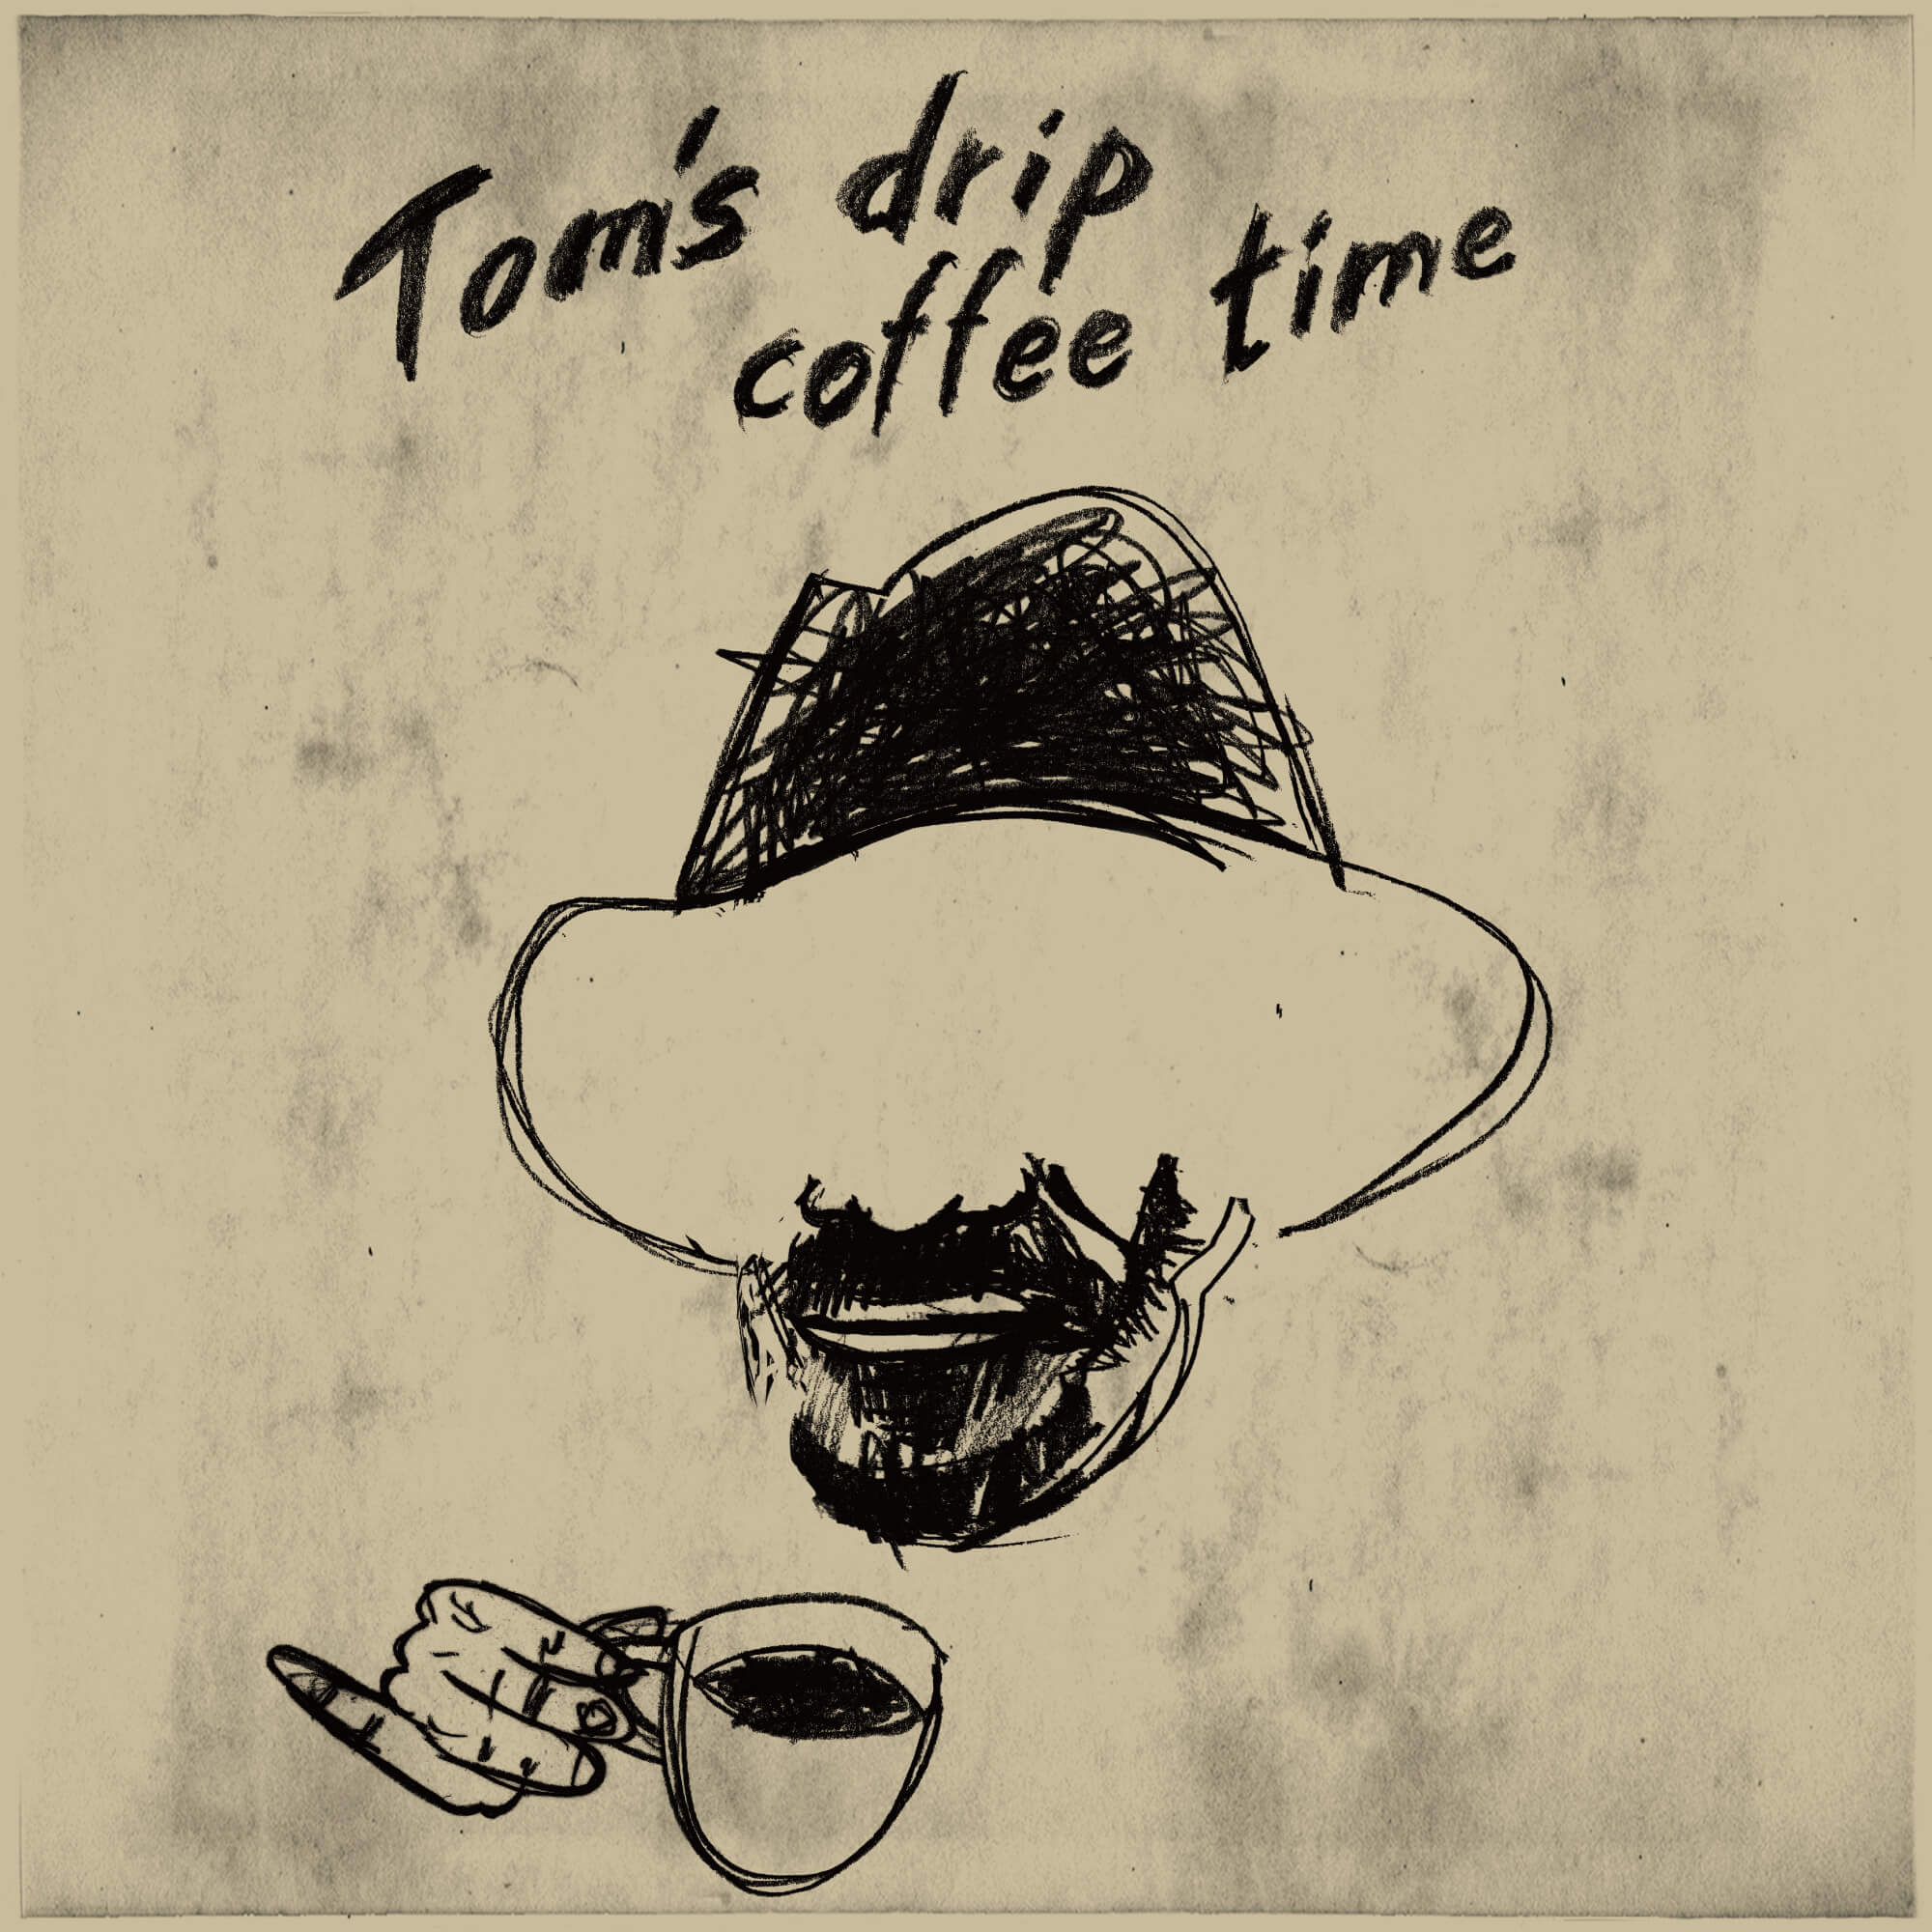 Tom's drip coffee time